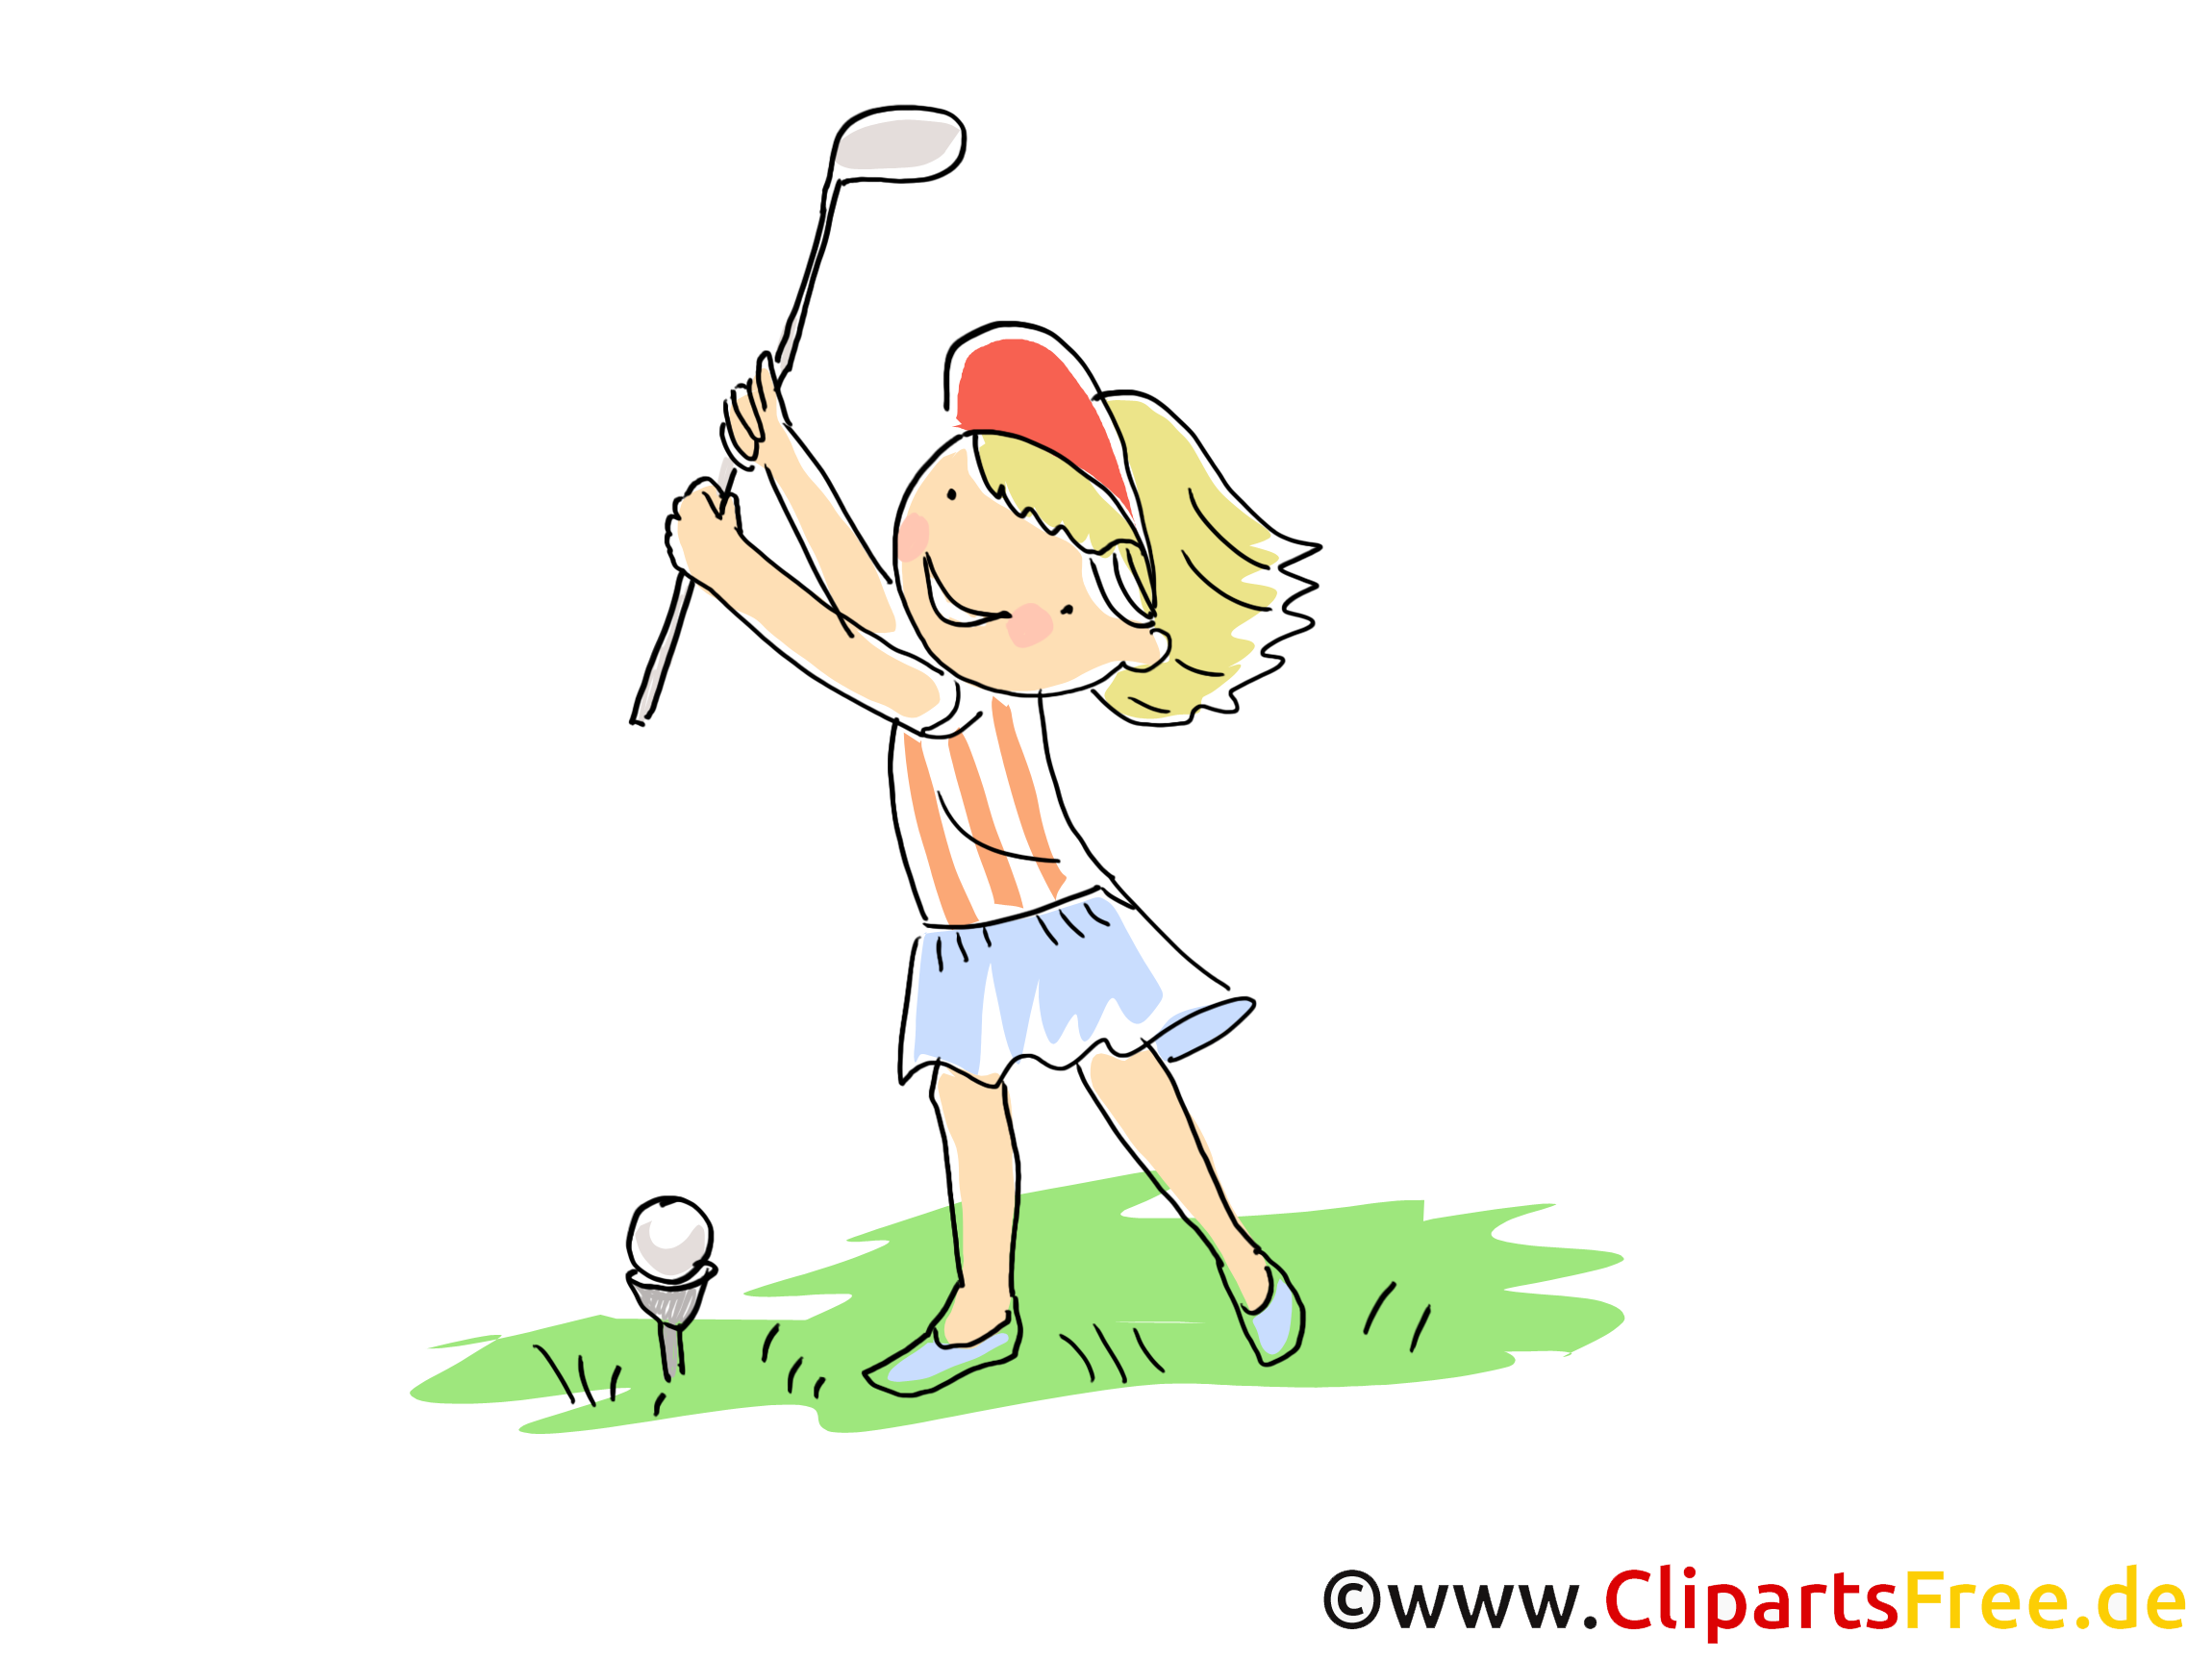 clipart gratuit golf - photo #6